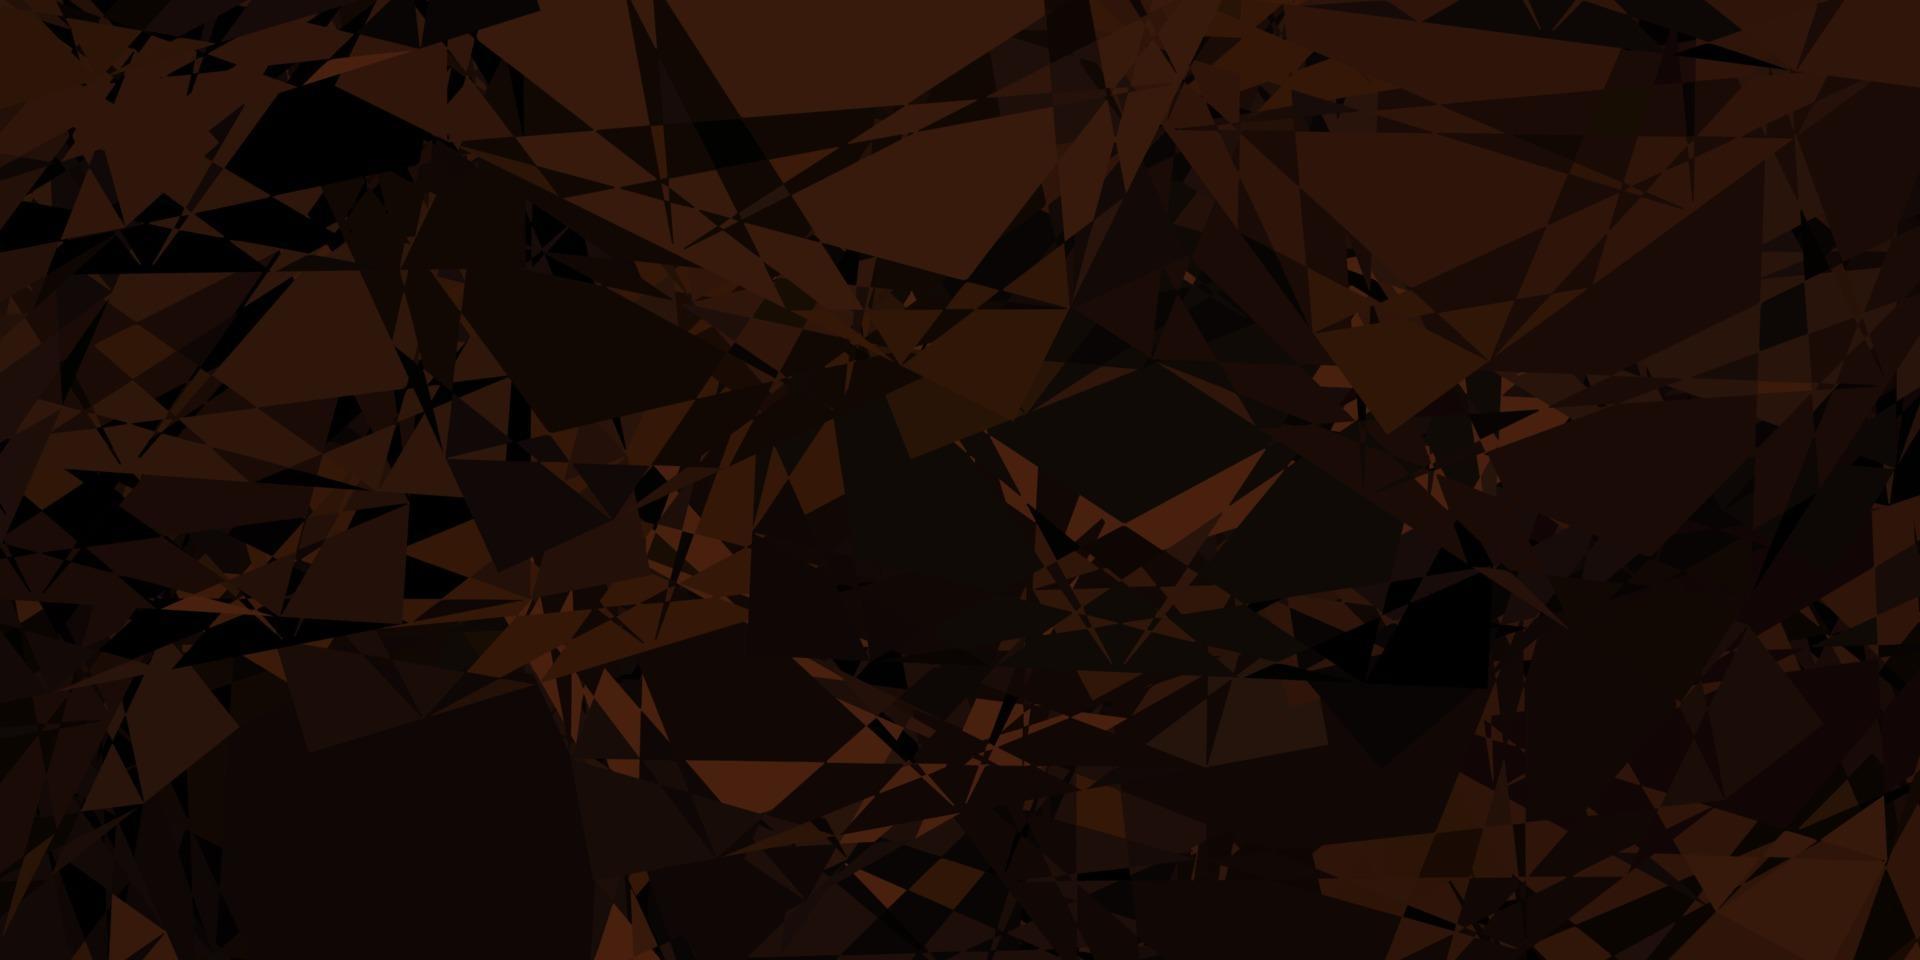 plantilla de vector marrón oscuro con formas triangulares.